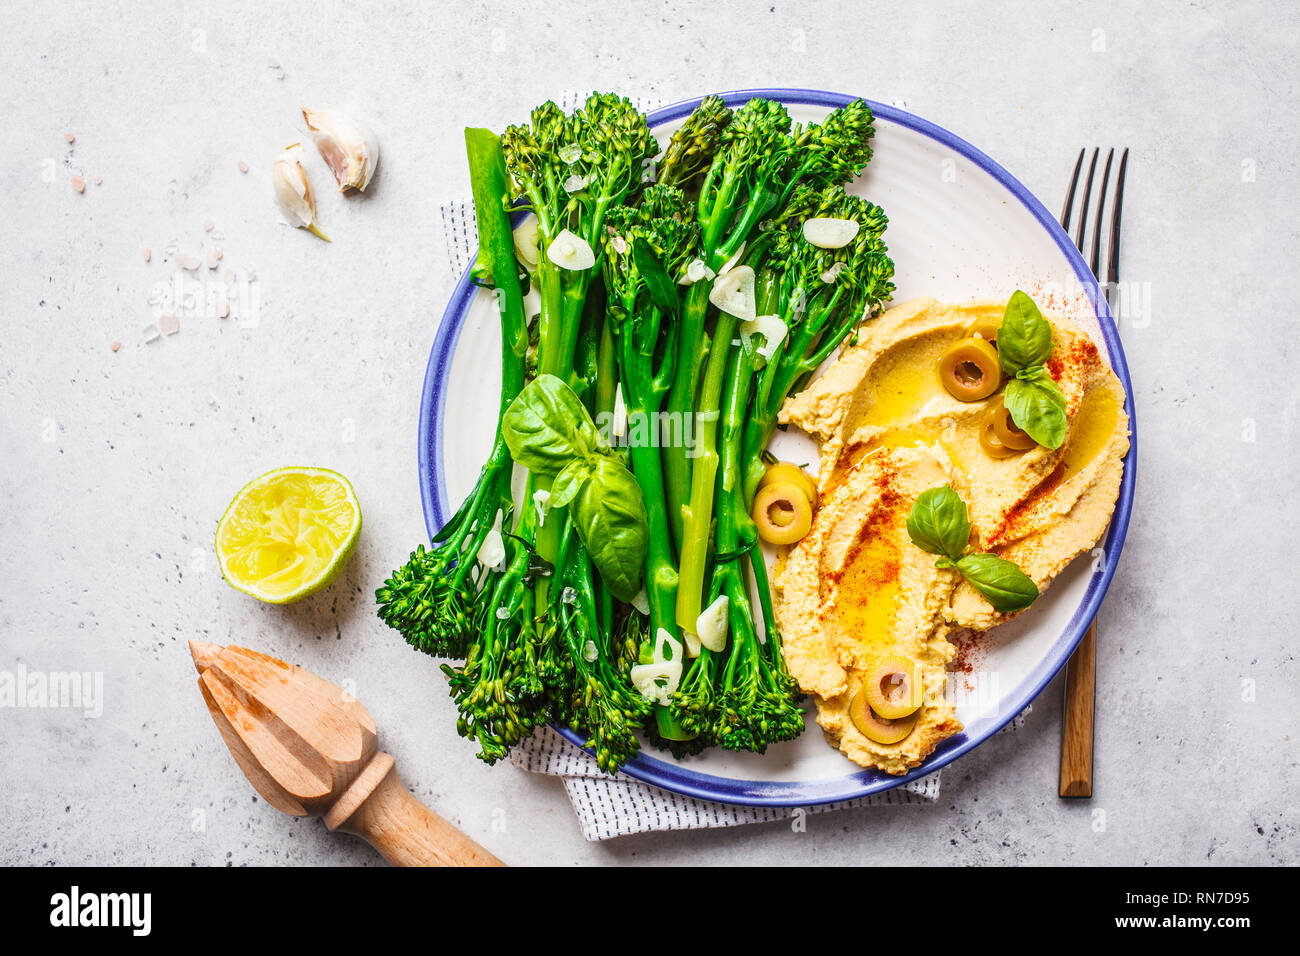 Broccolini cuit avec du hoummos sur une plaque blanche, vue du dessus. La nourriture végétalienne saine concept. Banque D'Images